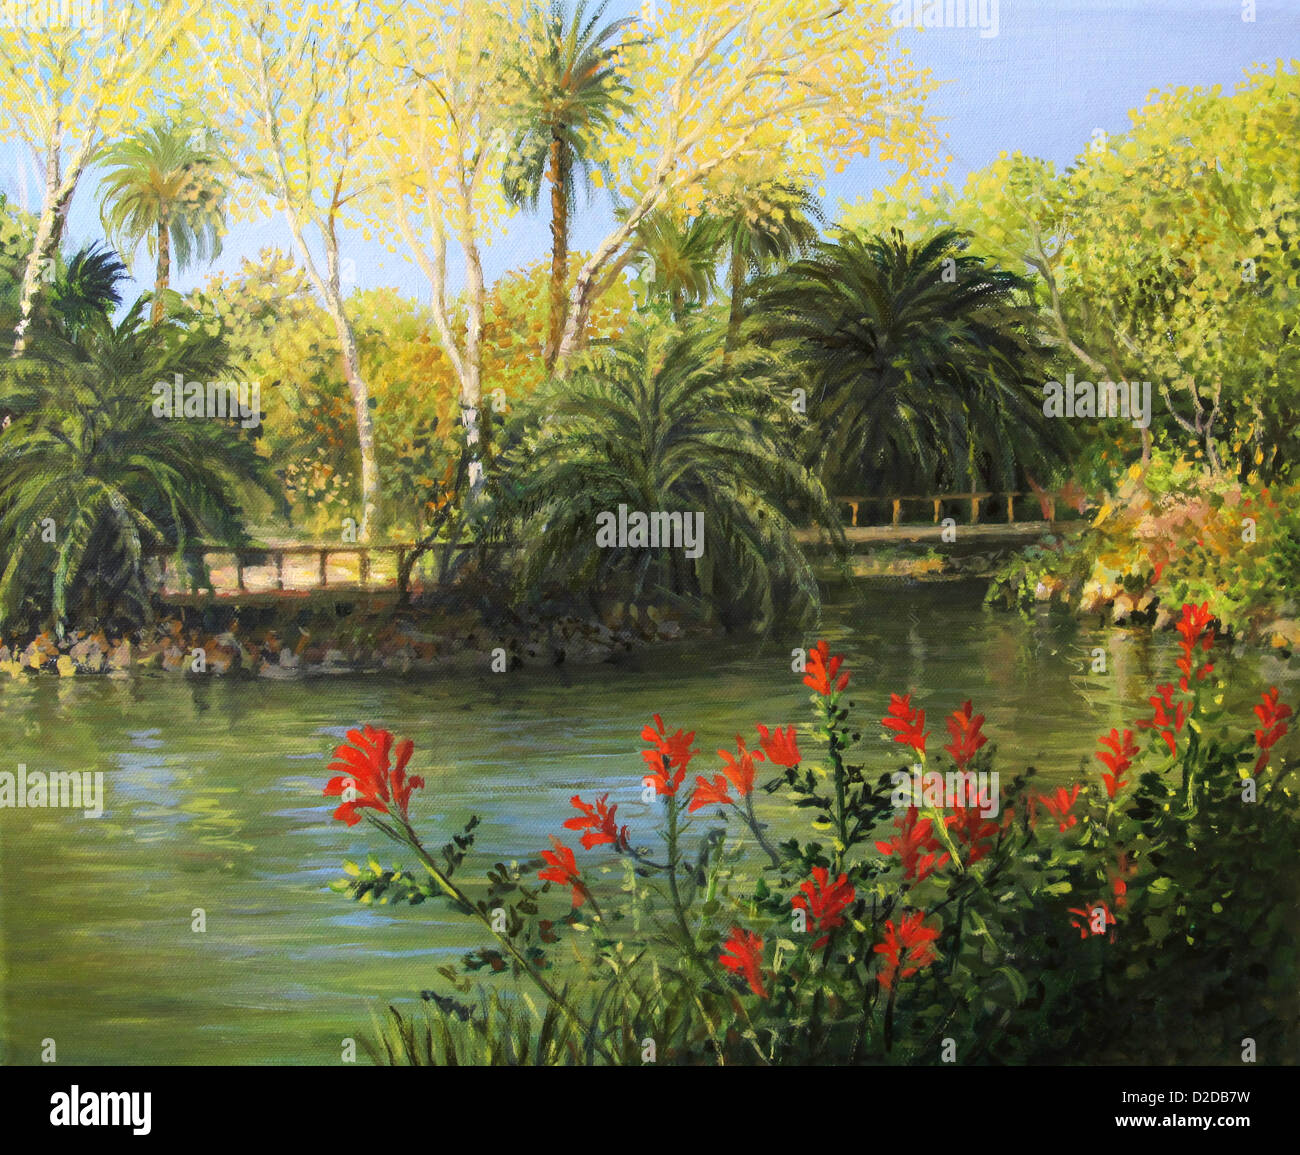 Une peinture à l'huile sur toile des jardins à la française avec le lac en 'Parc de la Ciutadella', Barcelone. Banque D'Images